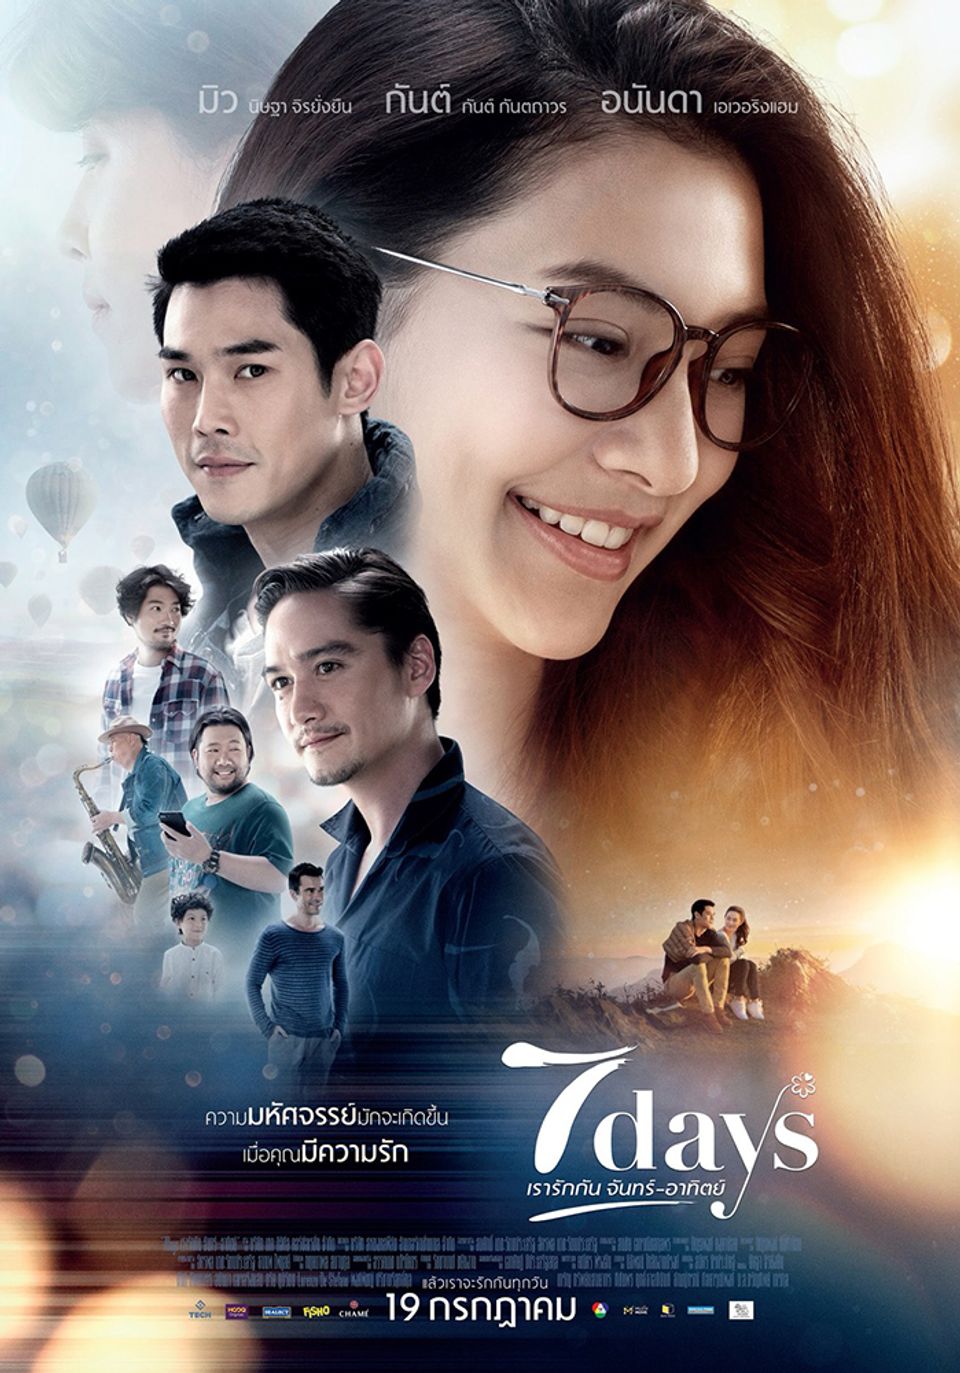 ภาพยนตร์ไทย “7 DAYS เรารักกัน จันทร์-อาทิตย์” (7 DAYS)